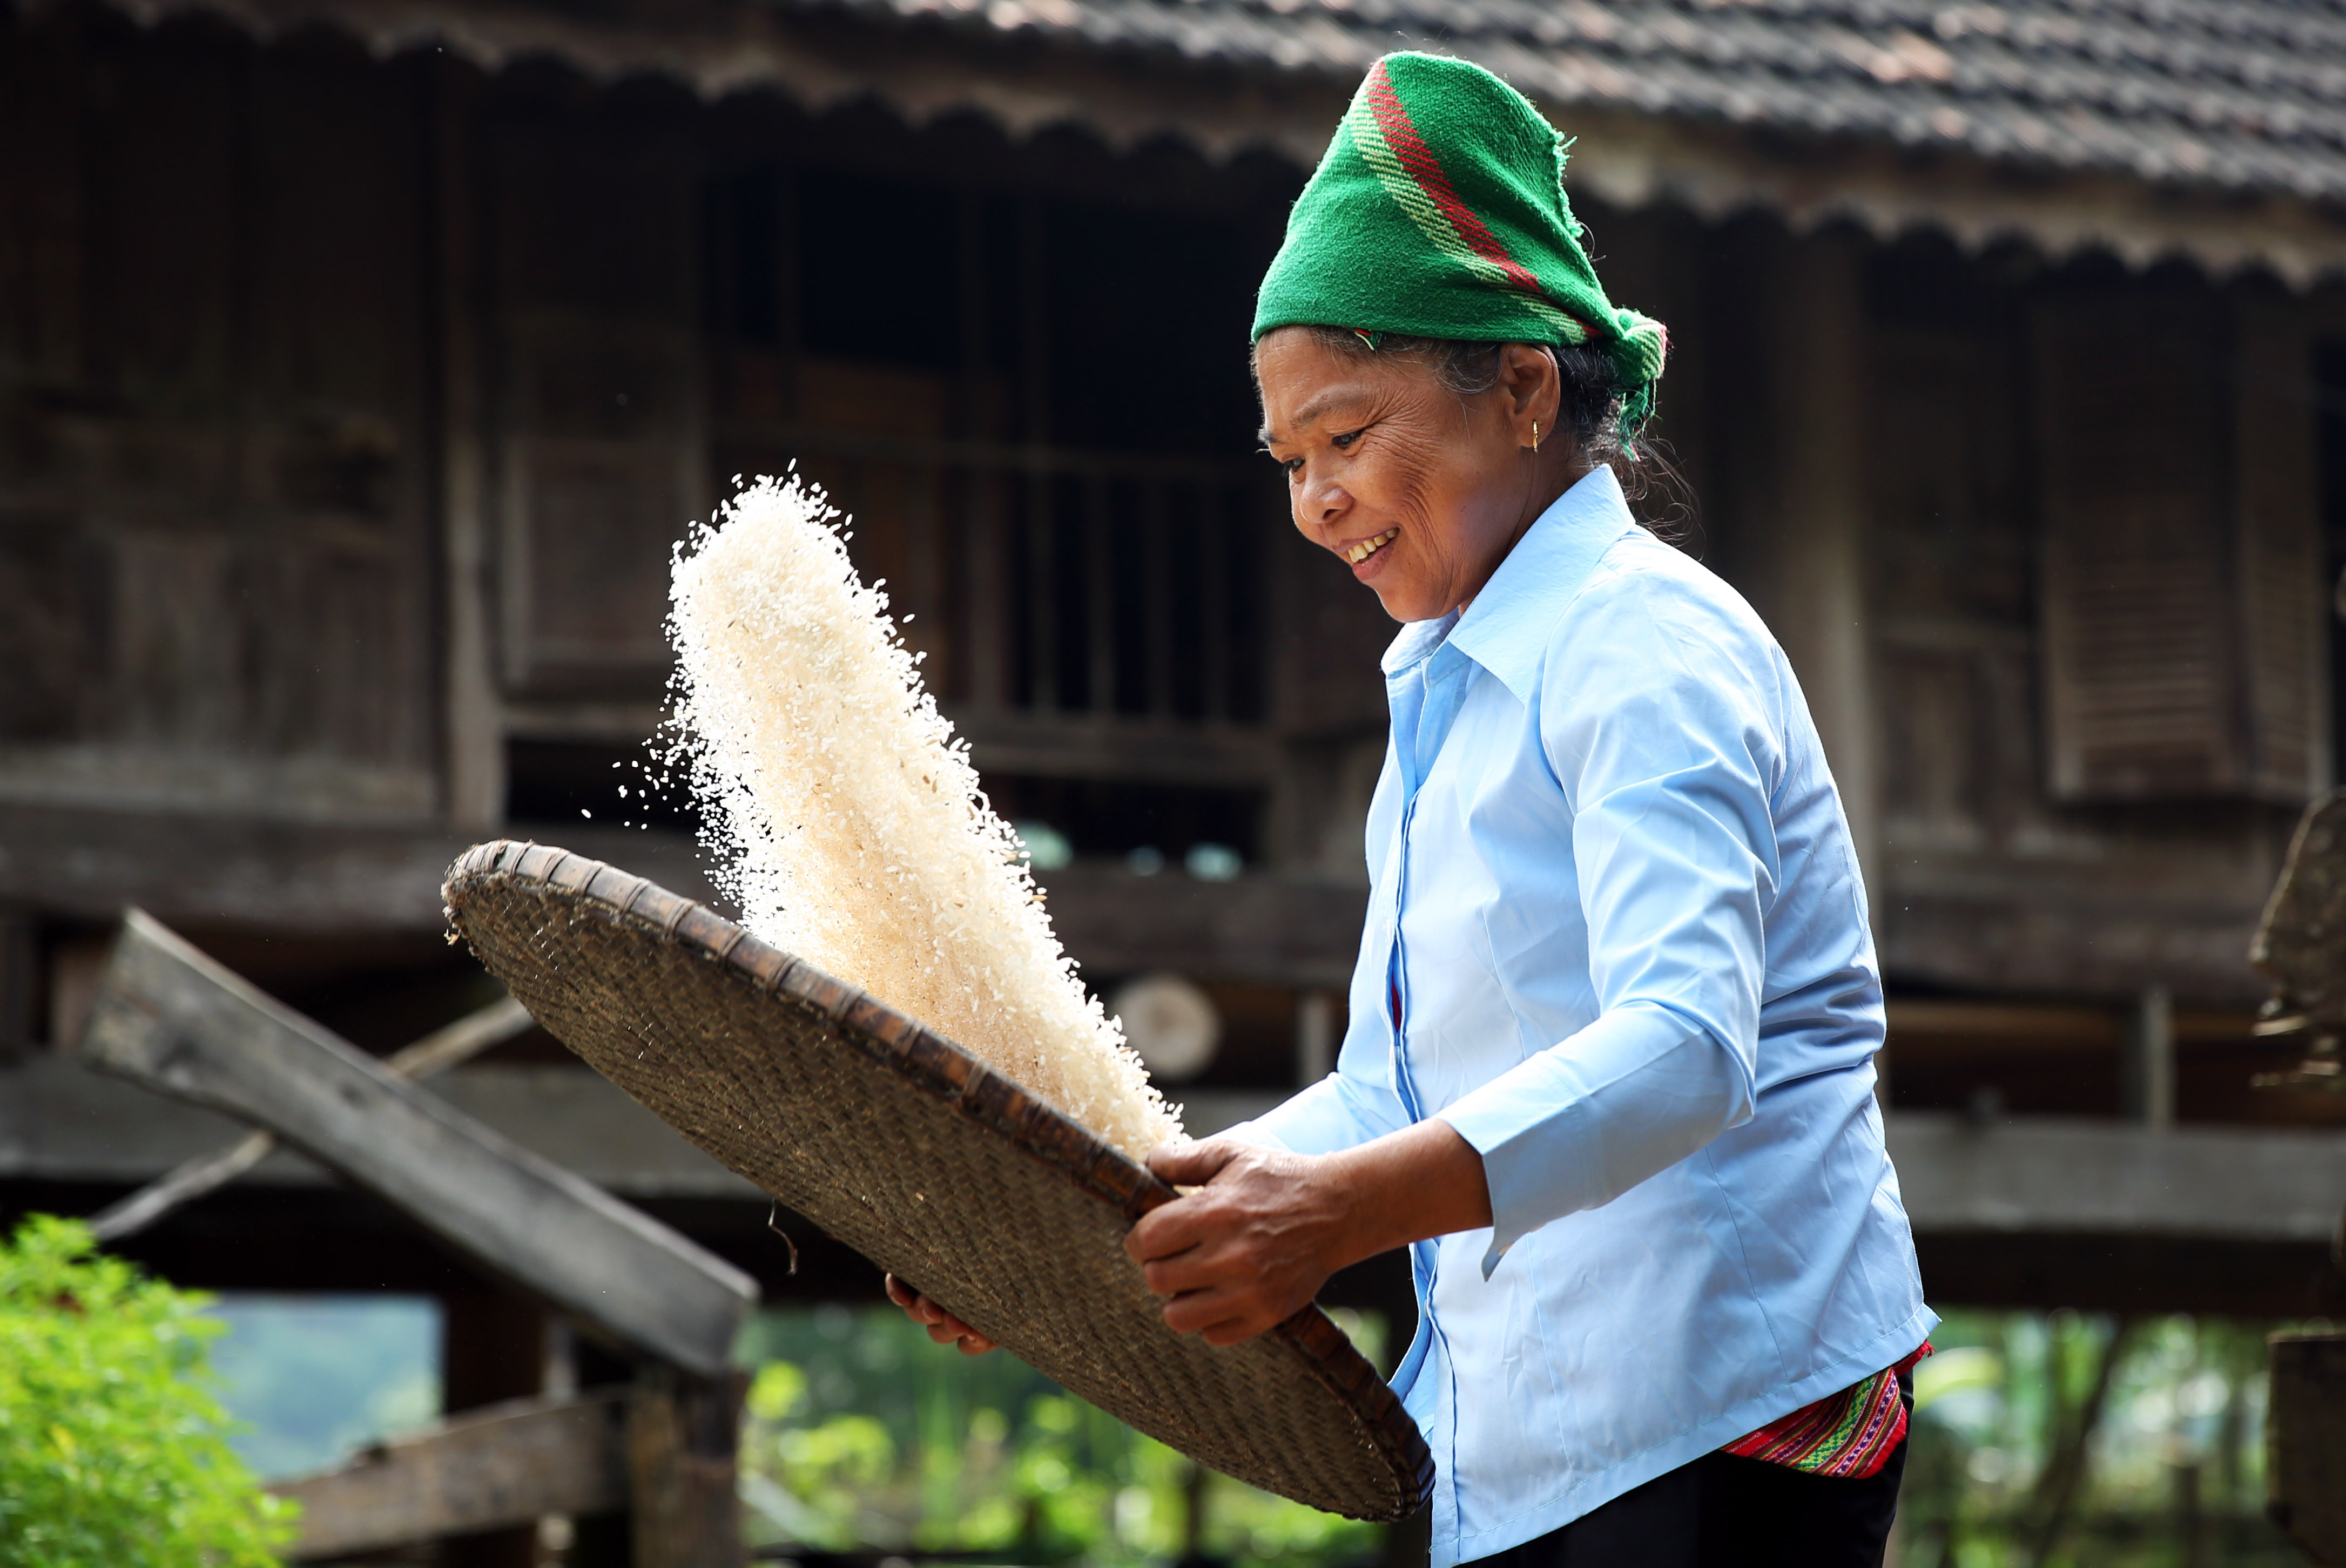 Gạo sau khi giã, người phụ nữ lại dùng nia để sảy gạo. Công việc gắn liền với những buổi sớm mai trước khi lên rẫy. Ảnh : Hồ Phương